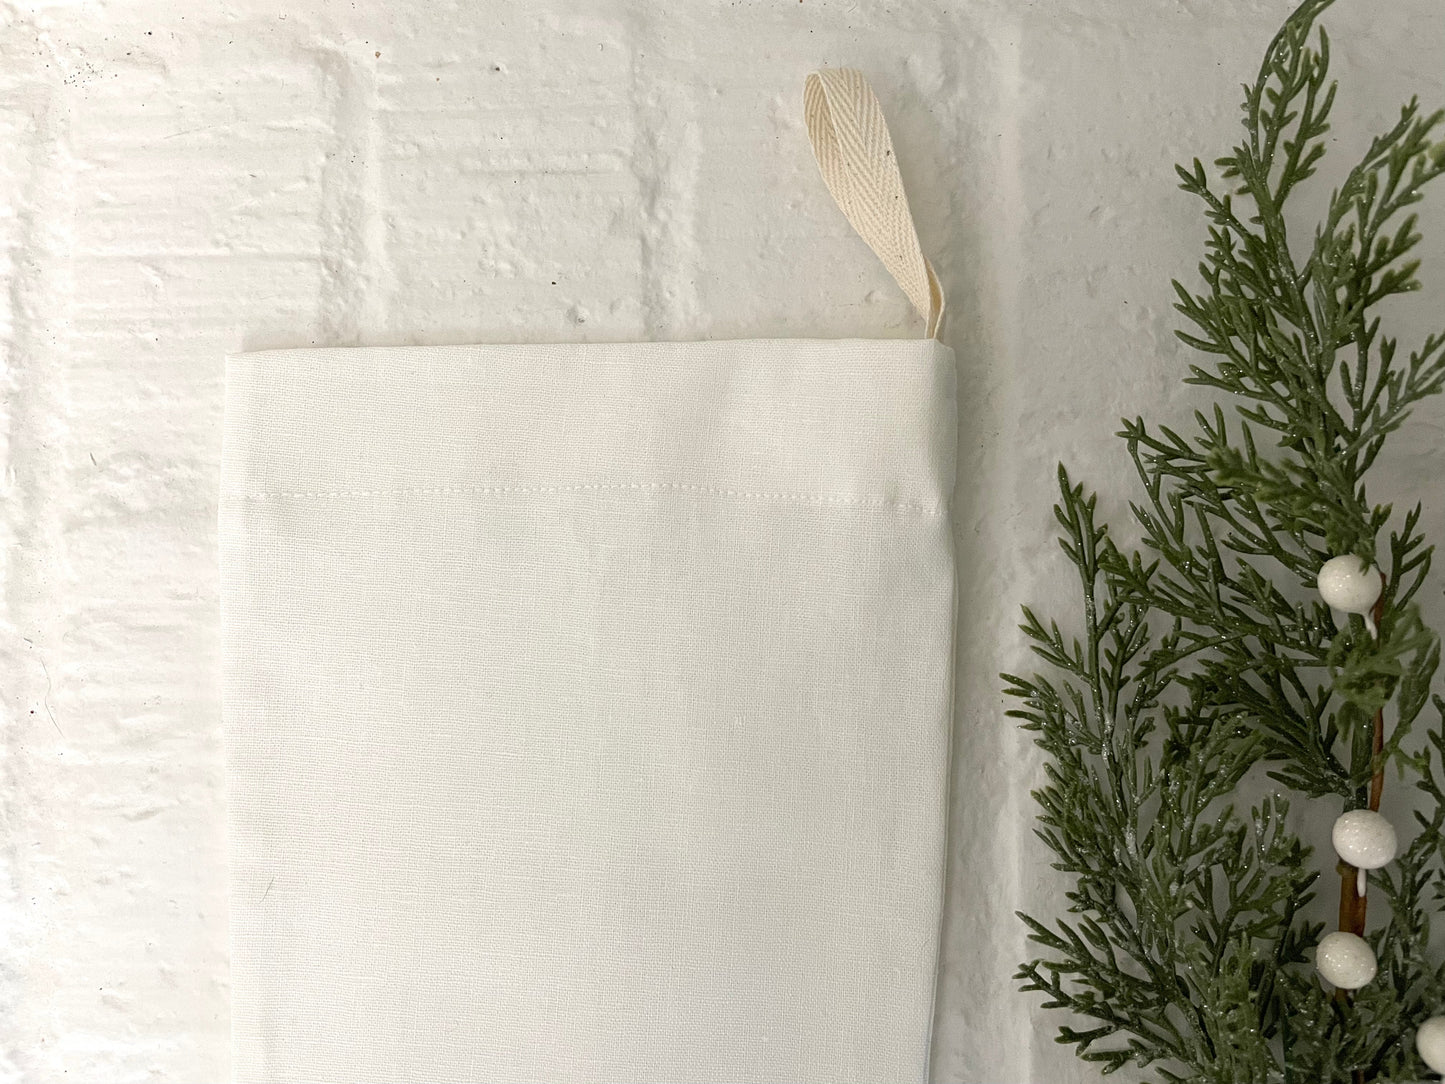 off-white handmade linen Christmas stocking